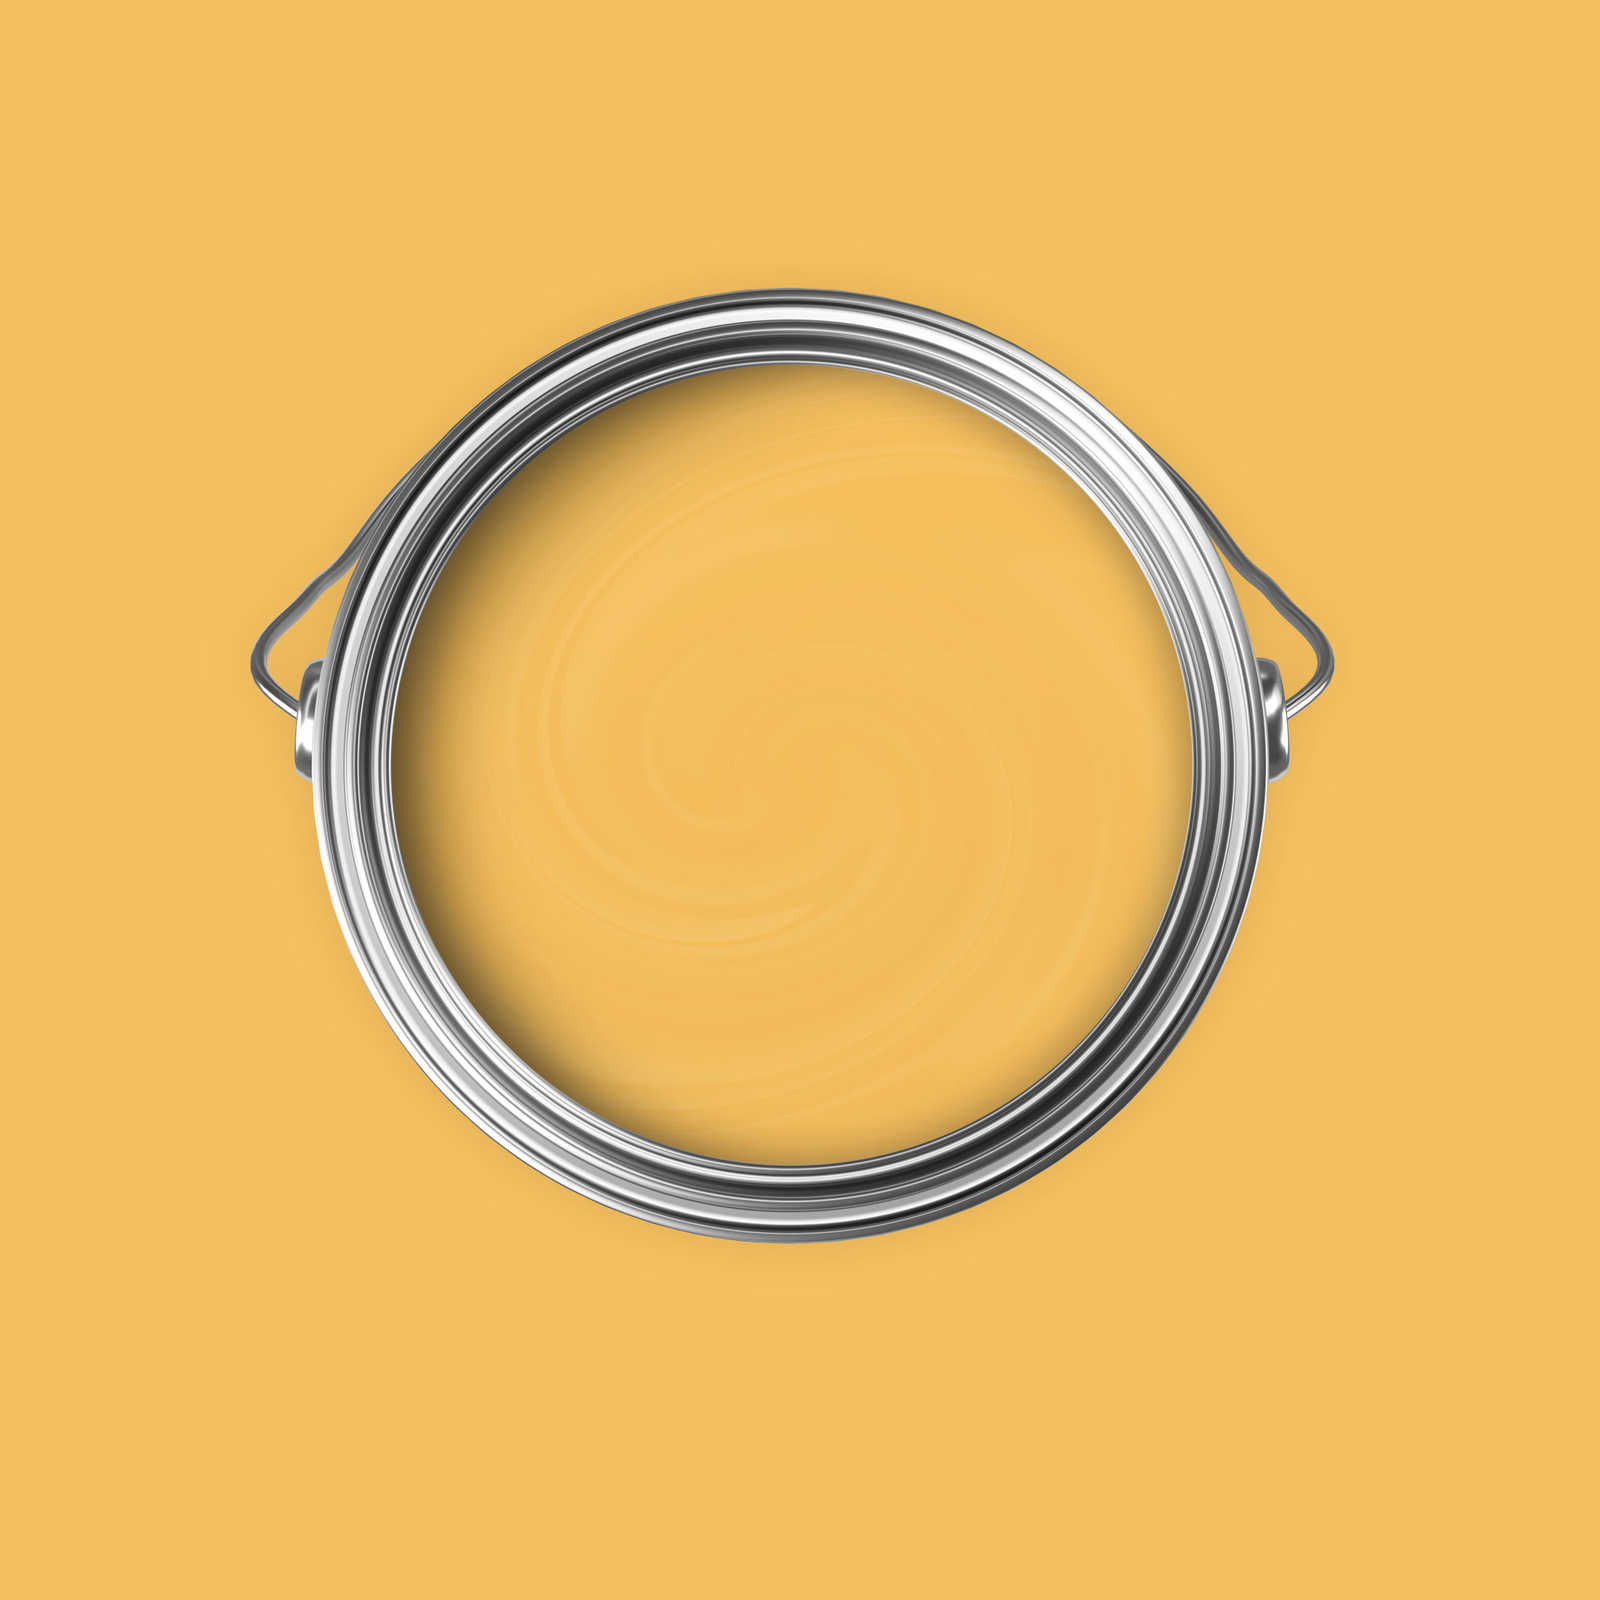             Peinture murale Premium jaune soleil stimulant »Juicy Yellow« NW805 – 5 litres
        